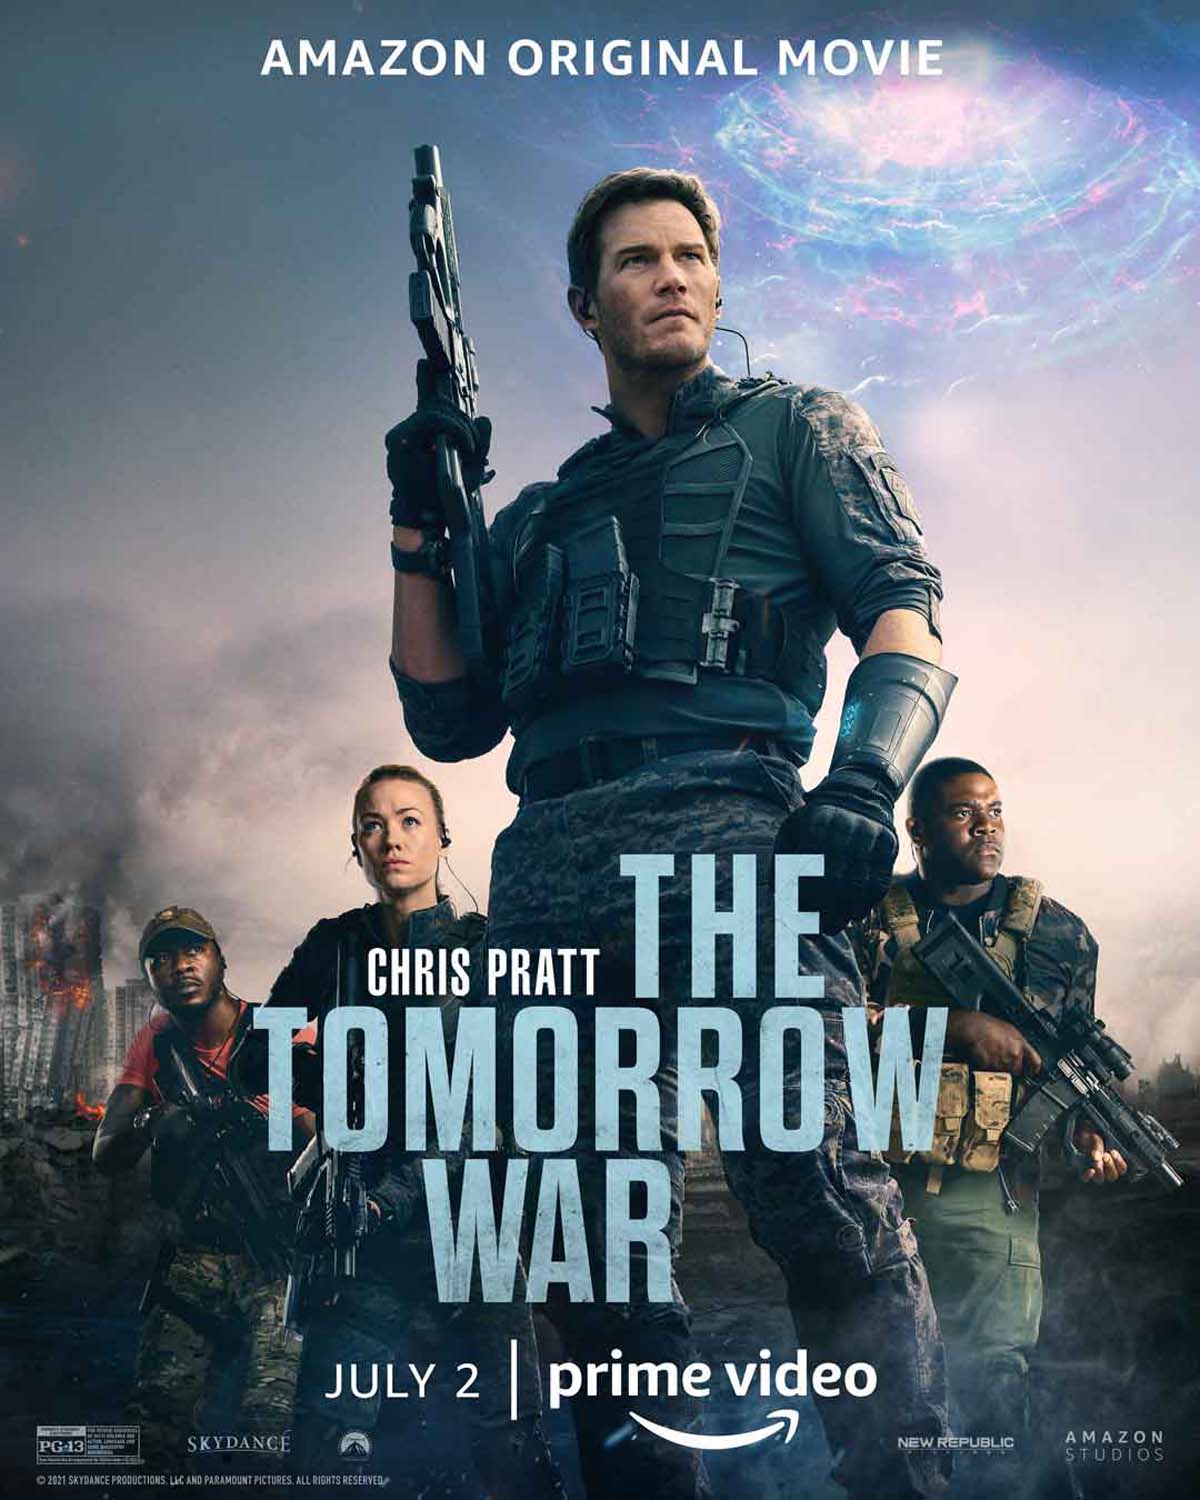 https://upload.wikimedia.org/wikipedia/tr/b/b1/The_Tomorrow_War.jpeg